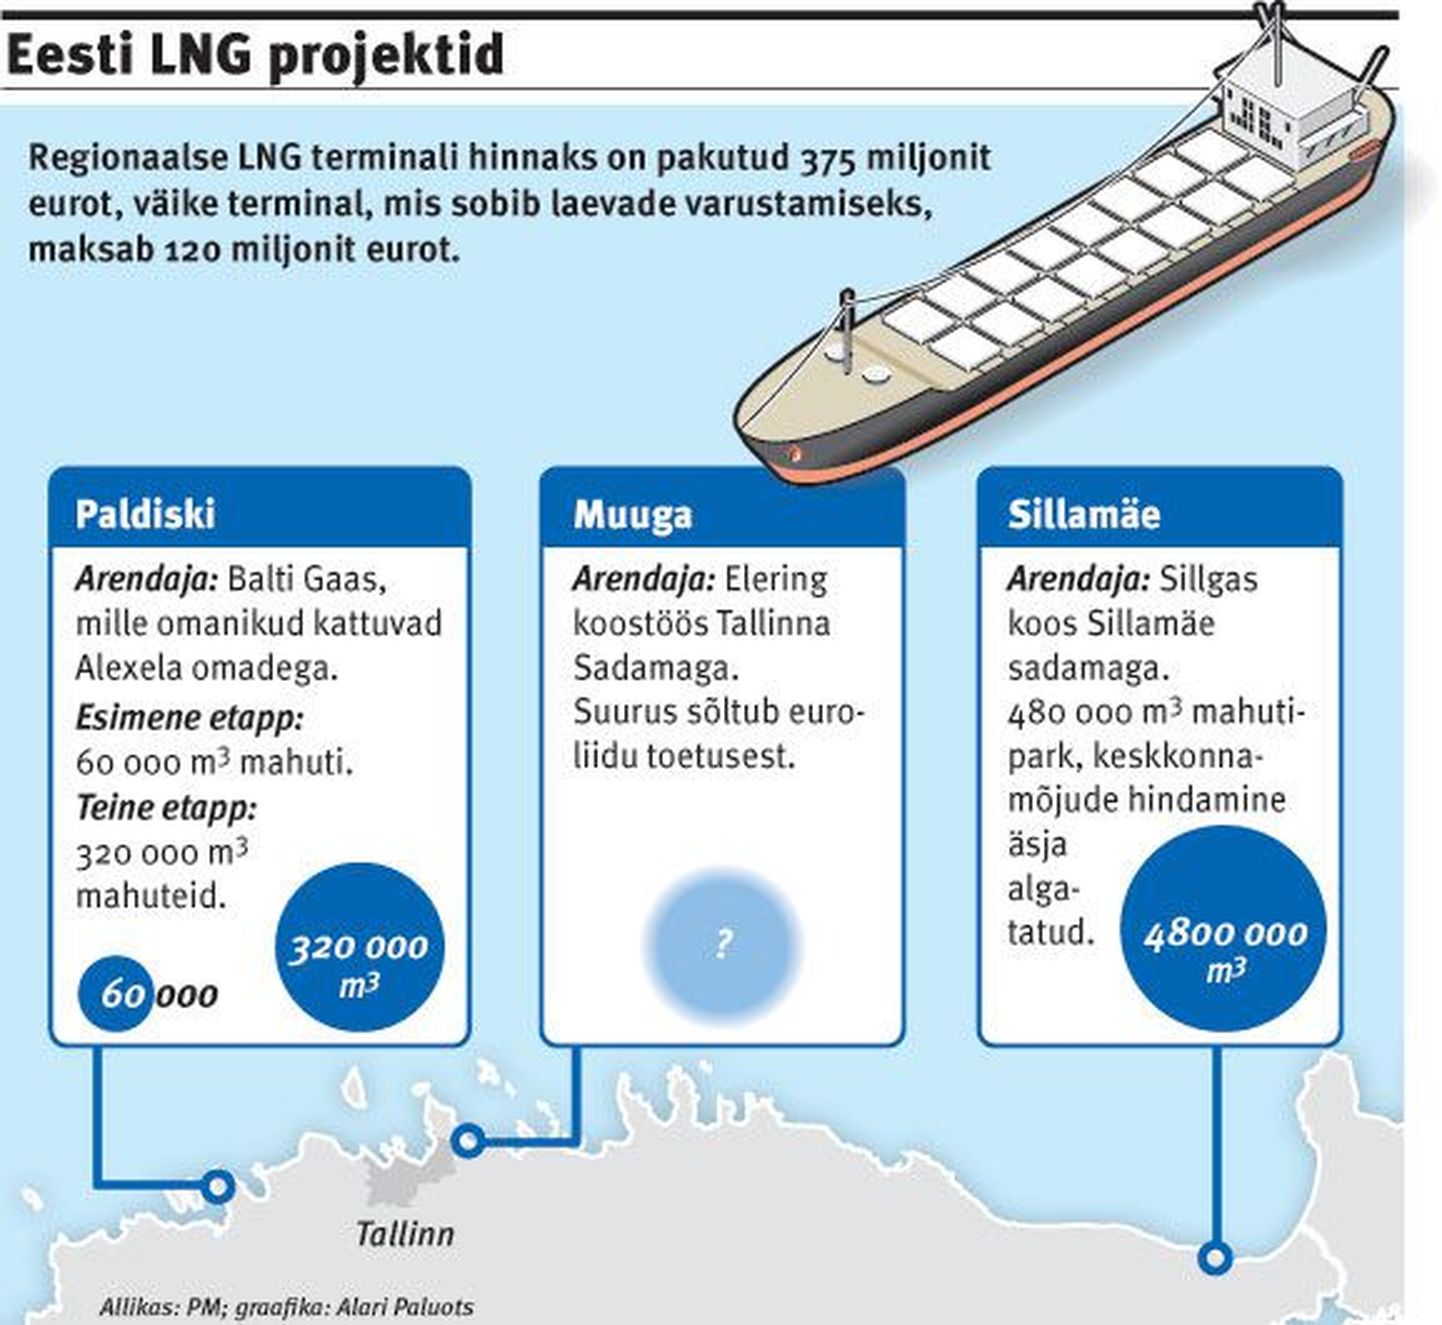 Eesti LNG projektid.